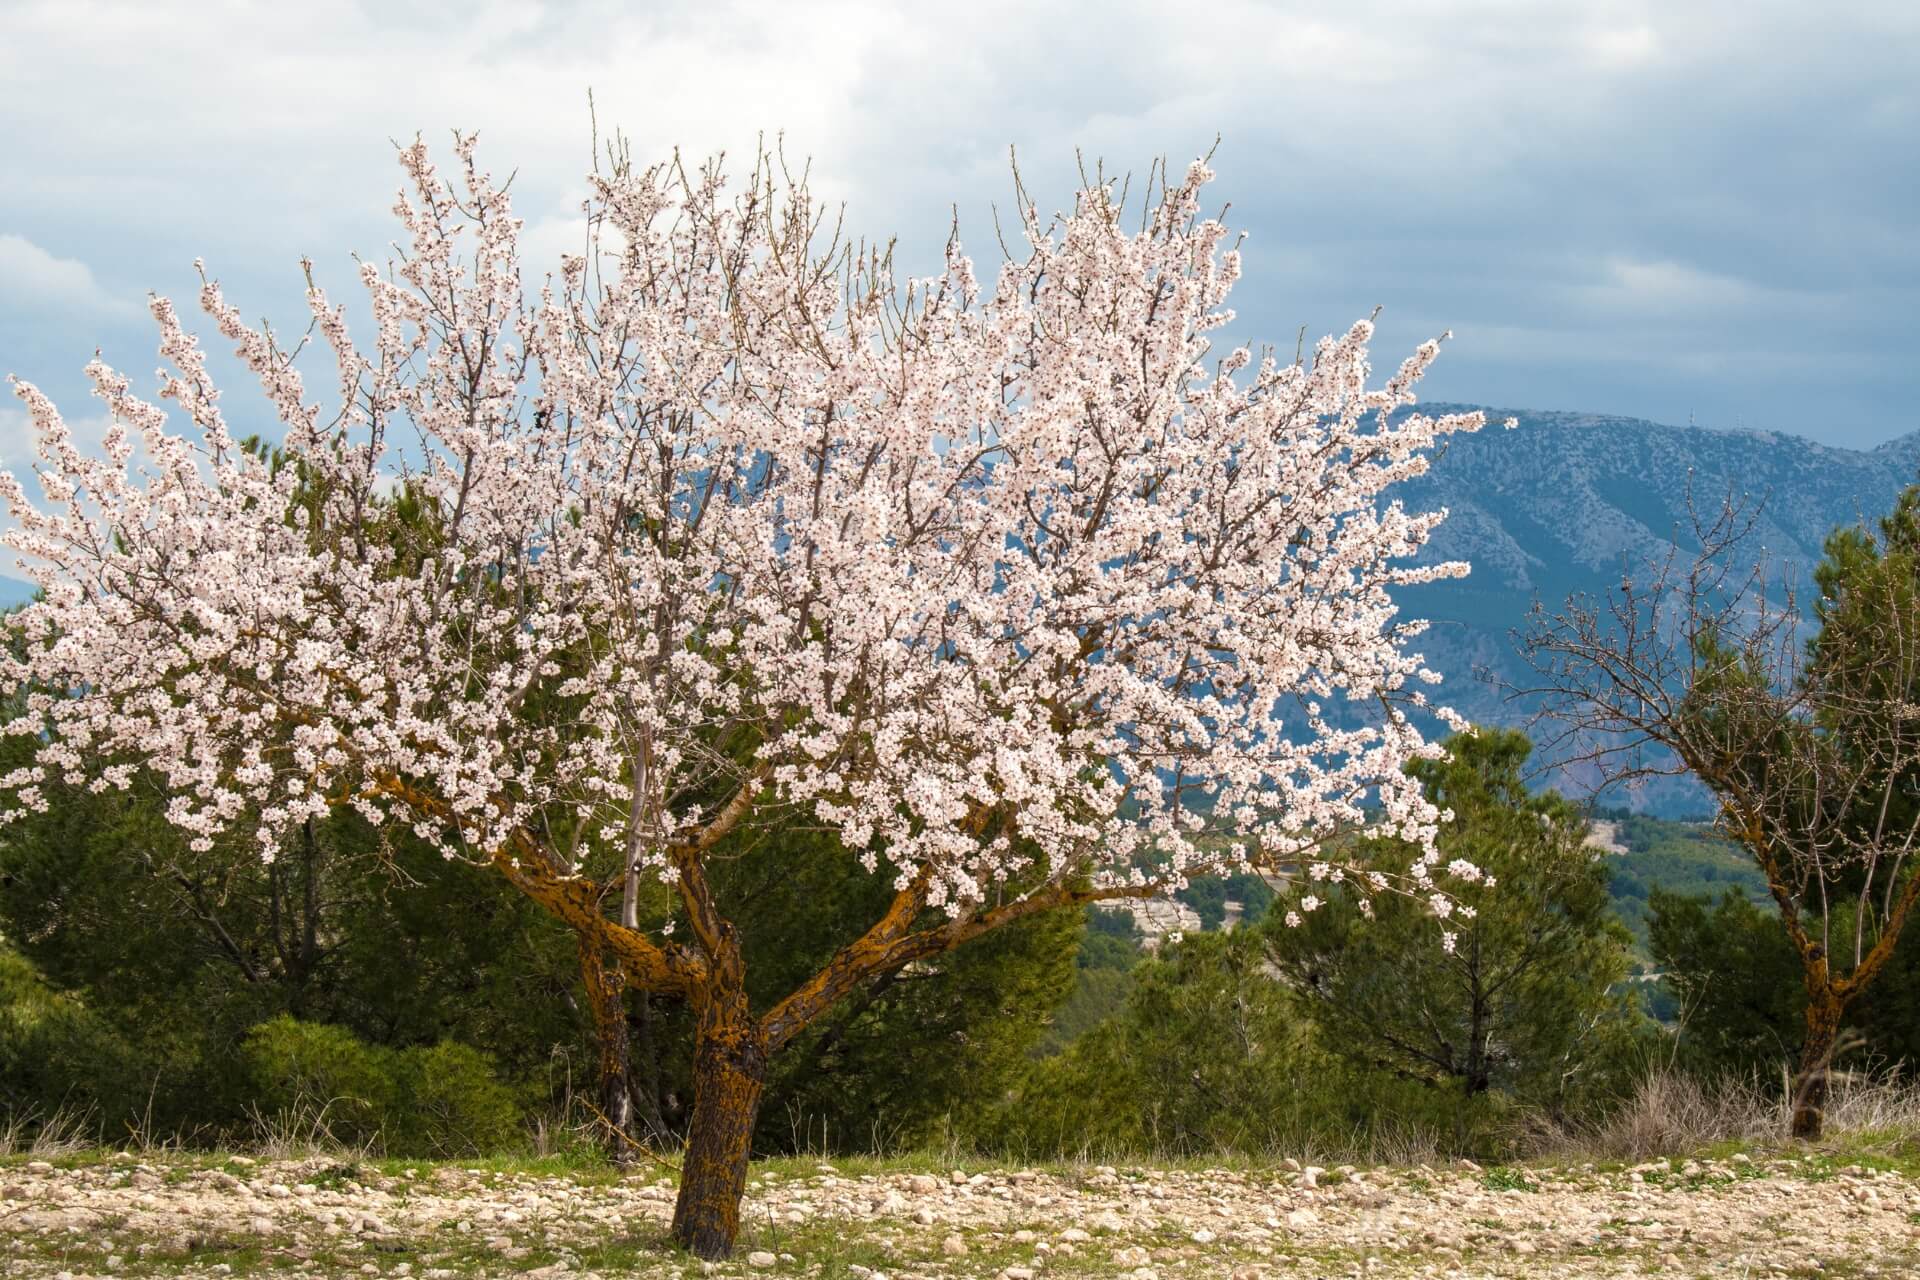 albero di mandorle in fiore